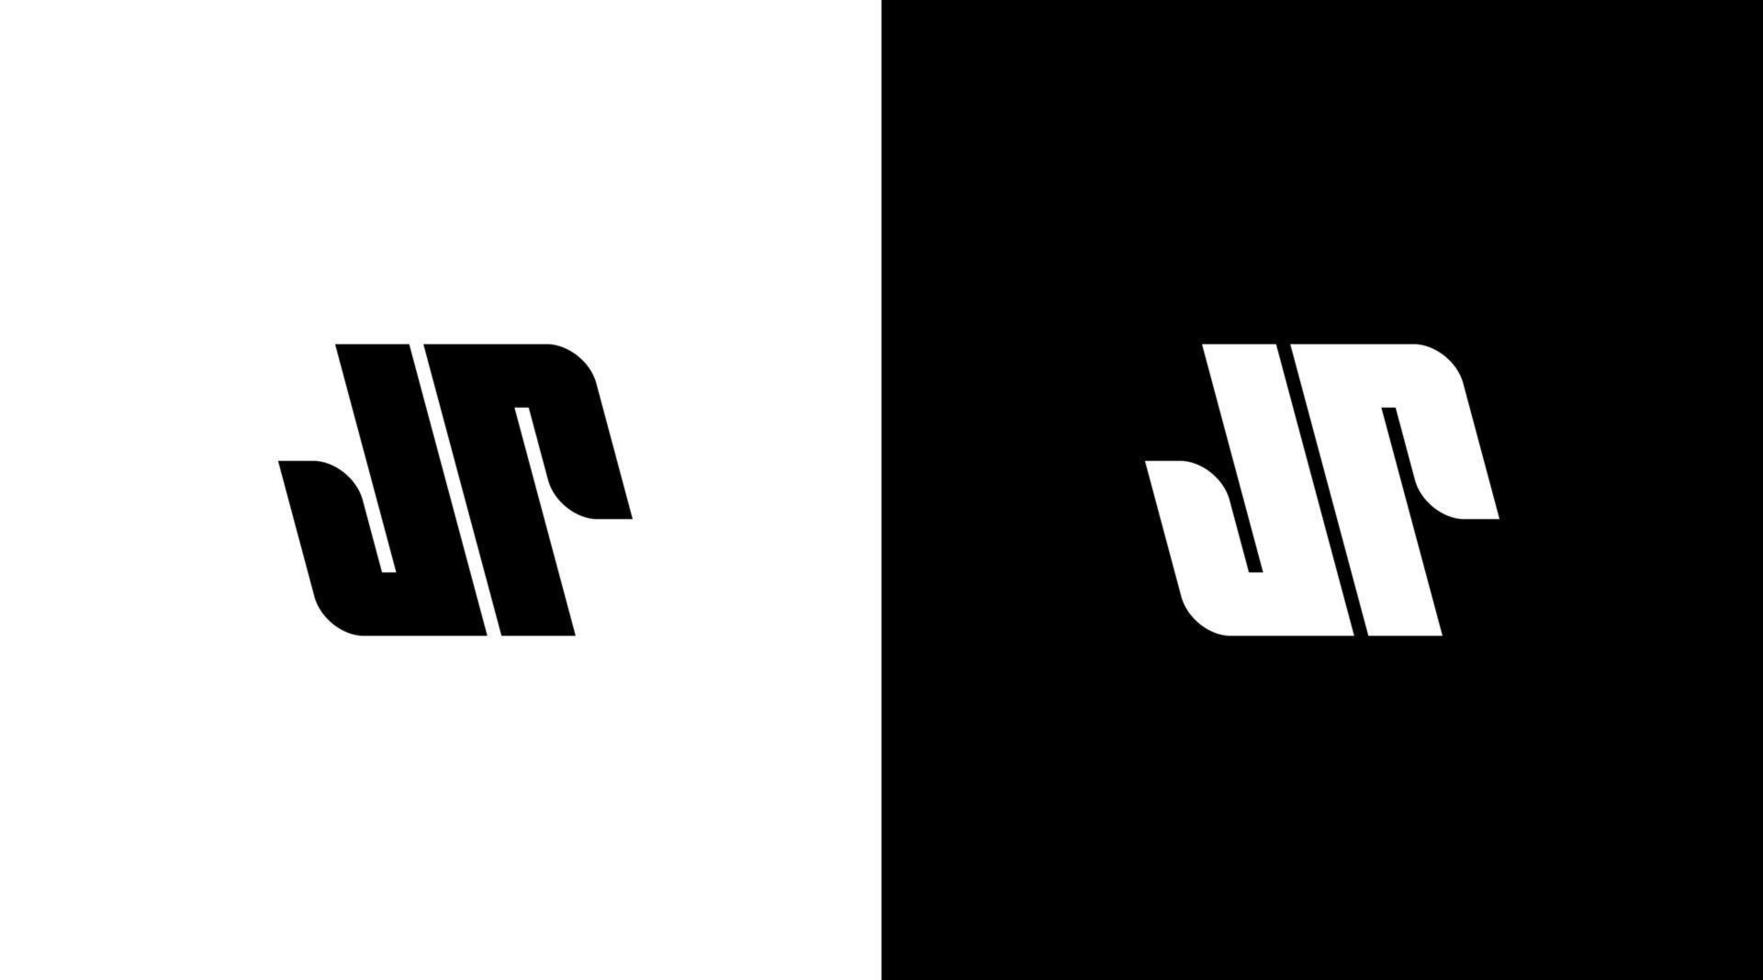 letra jr júnior logo diseño inicial vector monograma icono estilo modelo